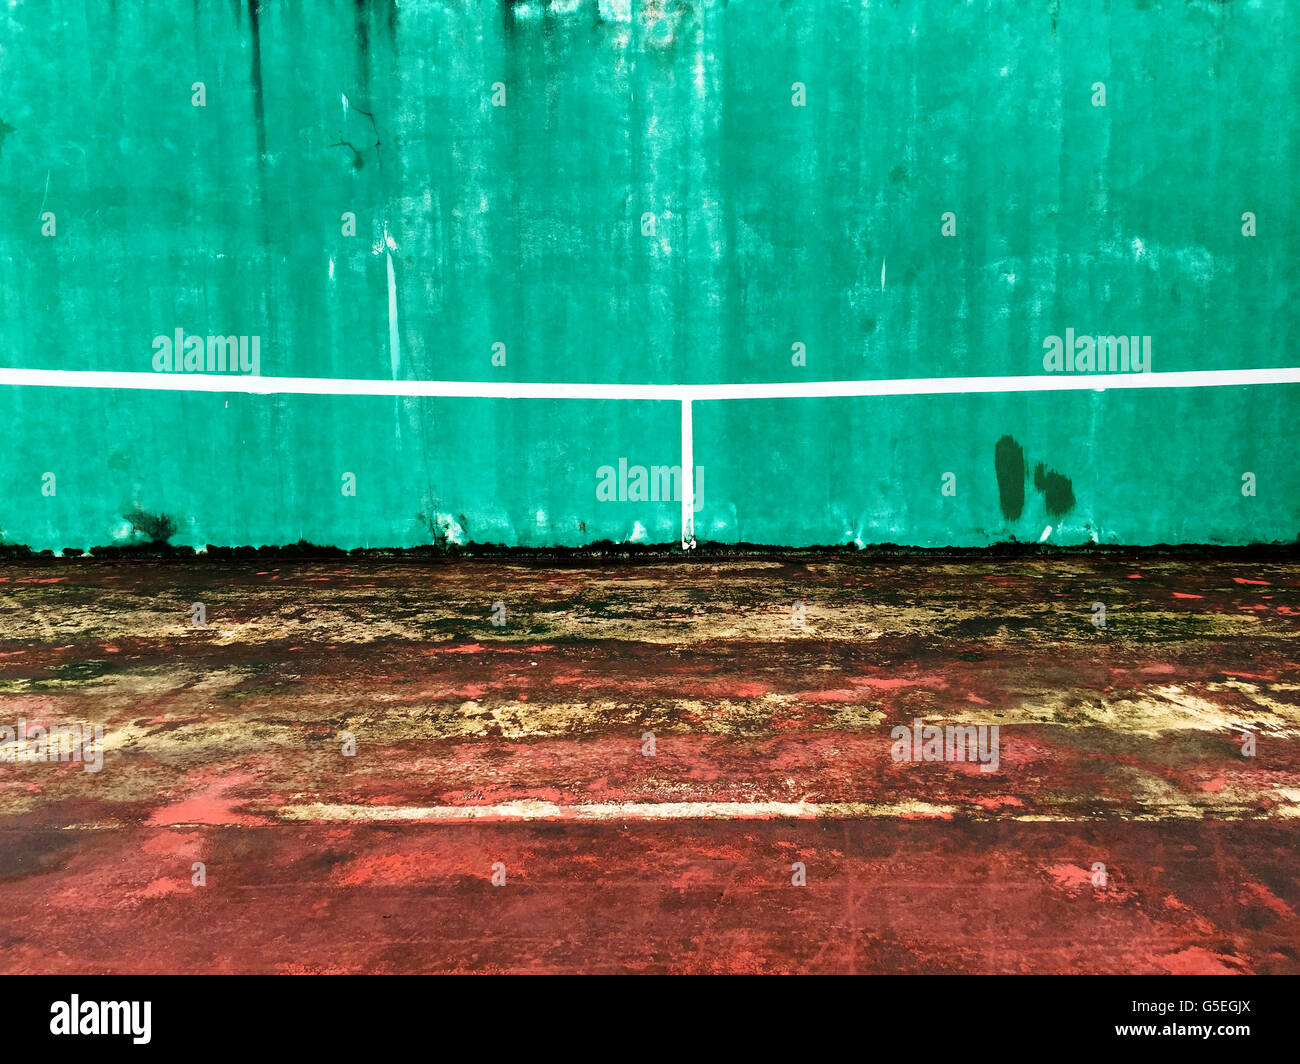 Dettaglio della vecchia pratica di tennis di sfondo a parete Foto Stock